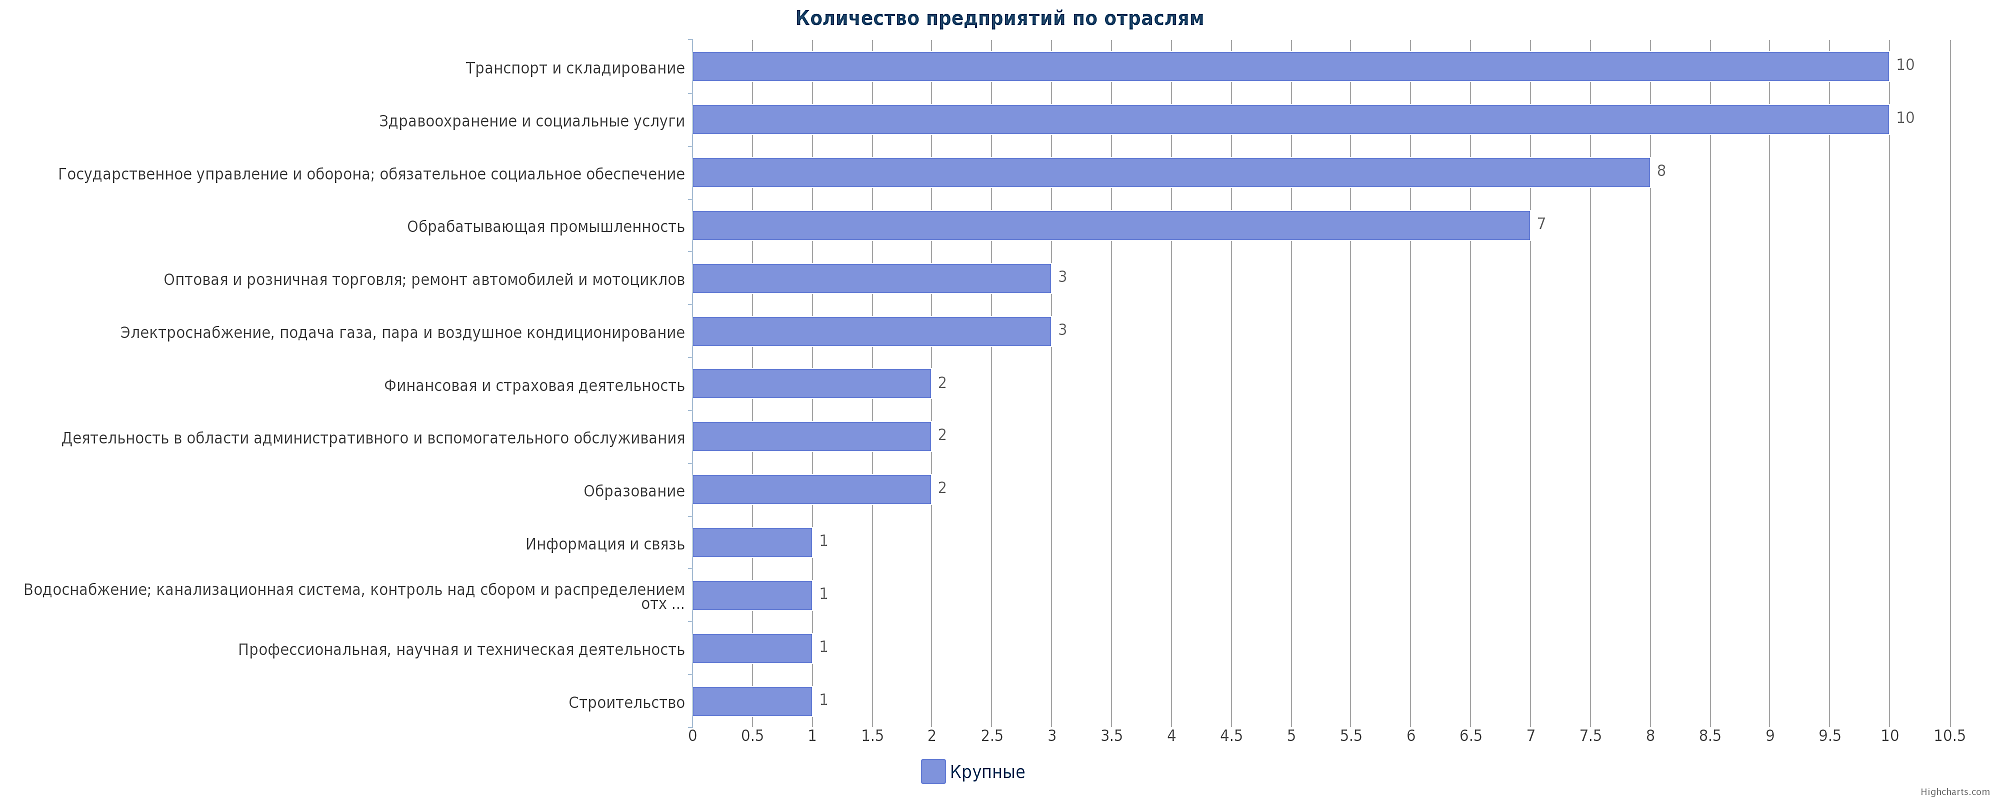 Крупные предприятия Казахстана по отраслям: Петропавловск